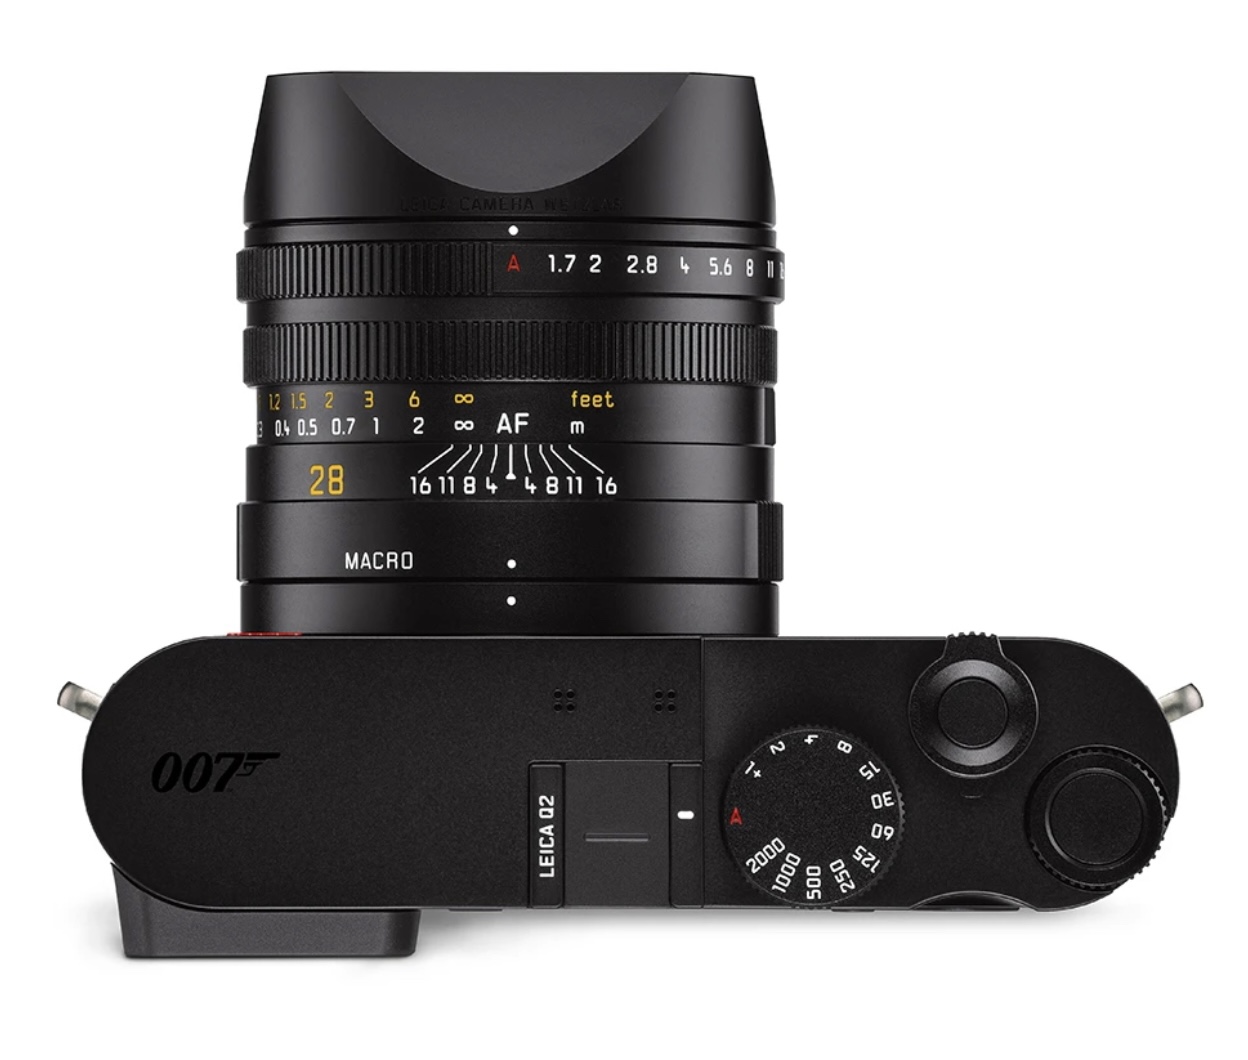 Leica ra mắt máy ảnh Q2 ‘007 Edition’ kỷ niệm bộ phim ‘No Time to Die’